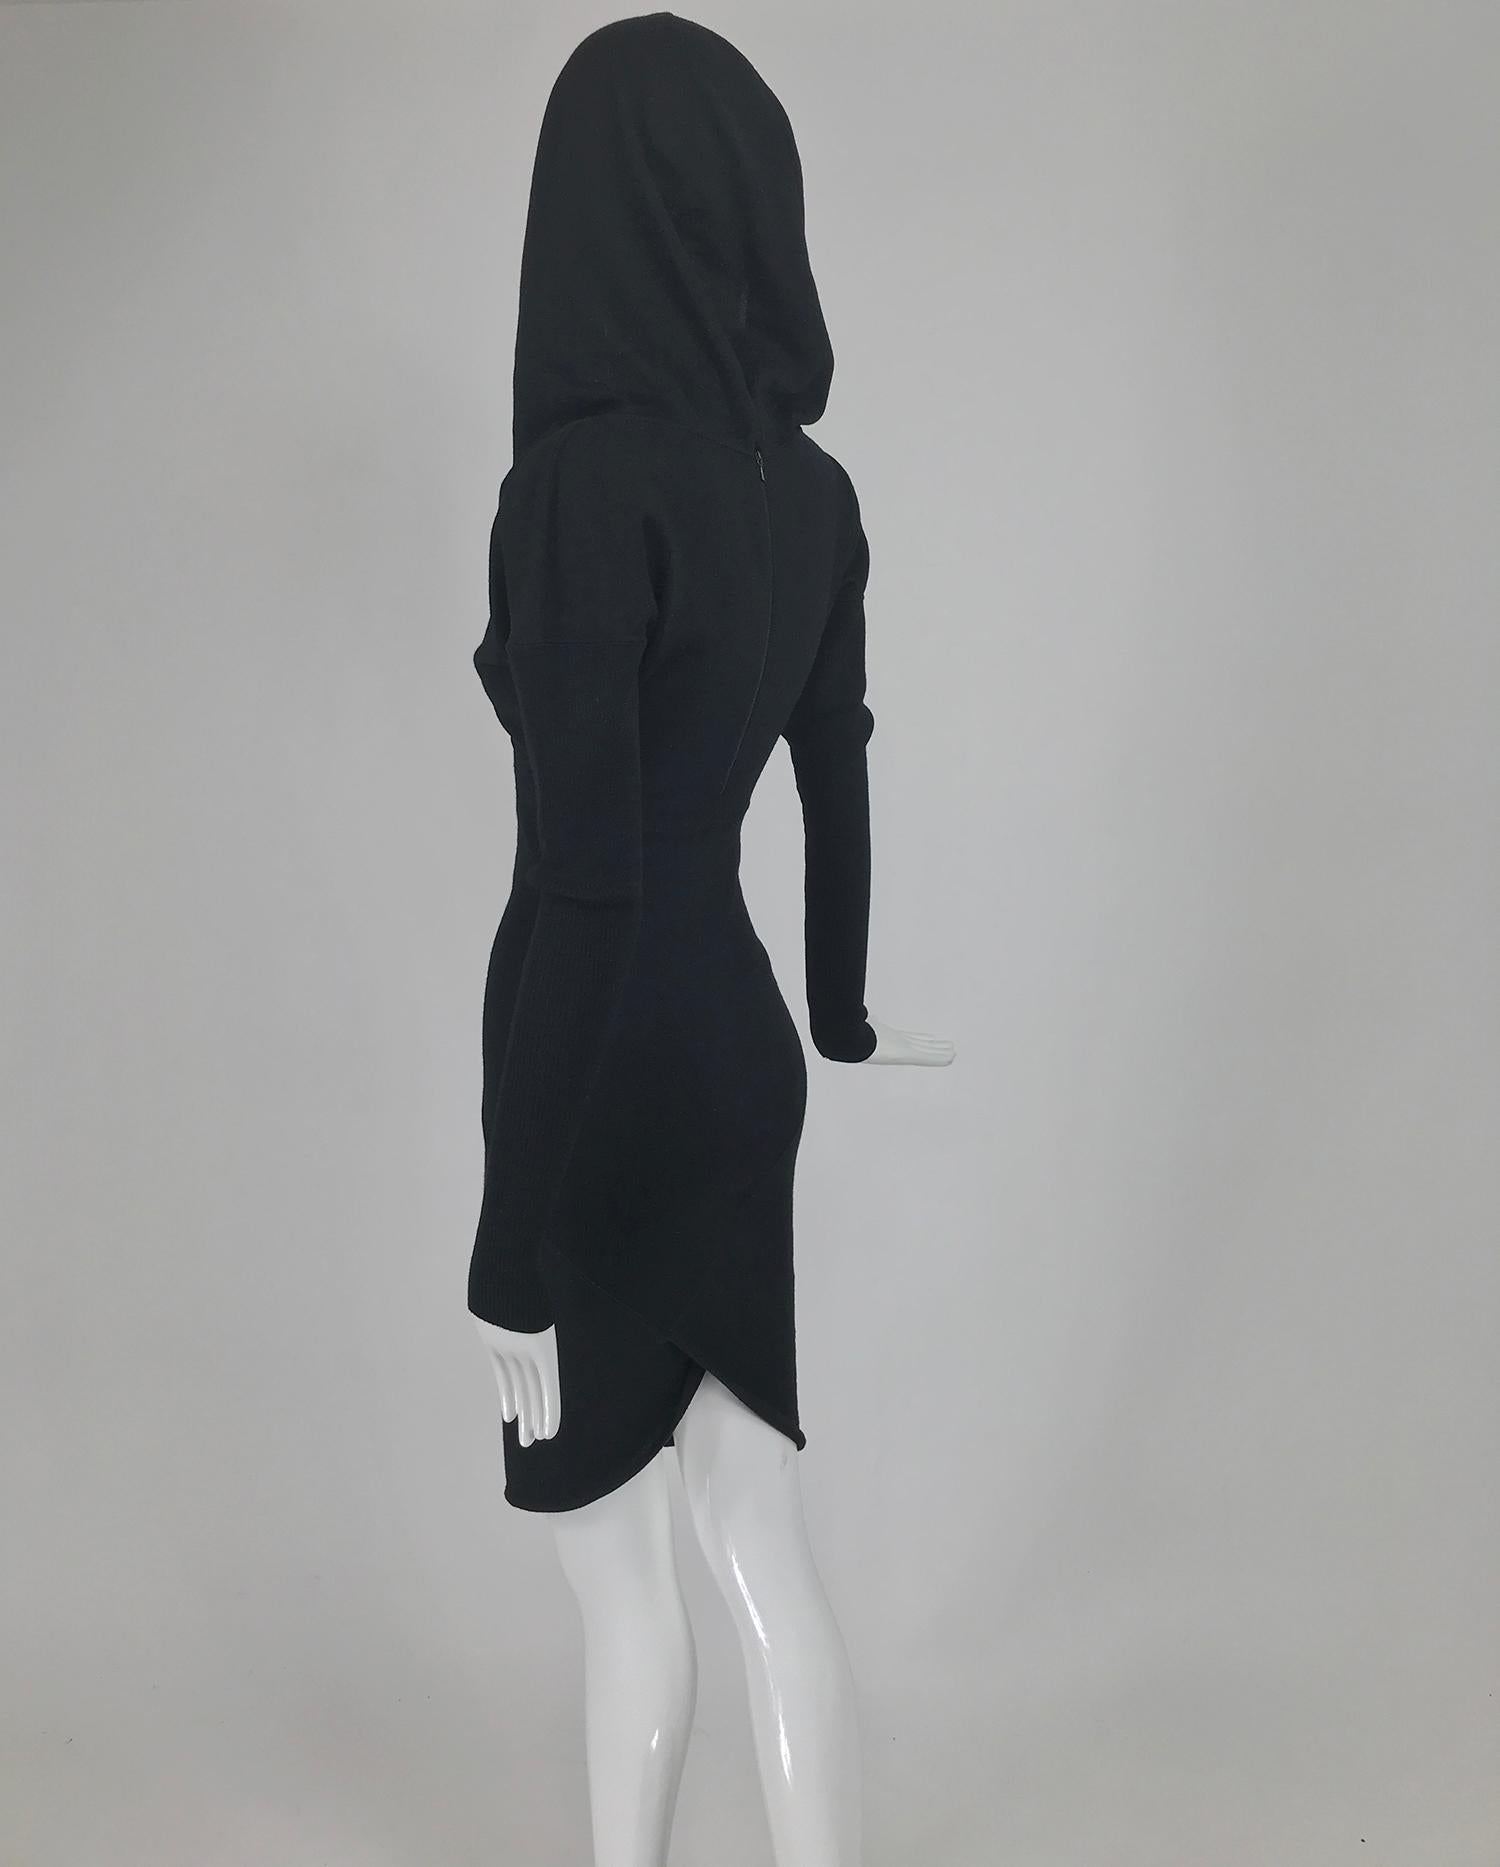 Women's Azzedine Alaïa Black Wool Knit Hooded Body Con Dress 1980s